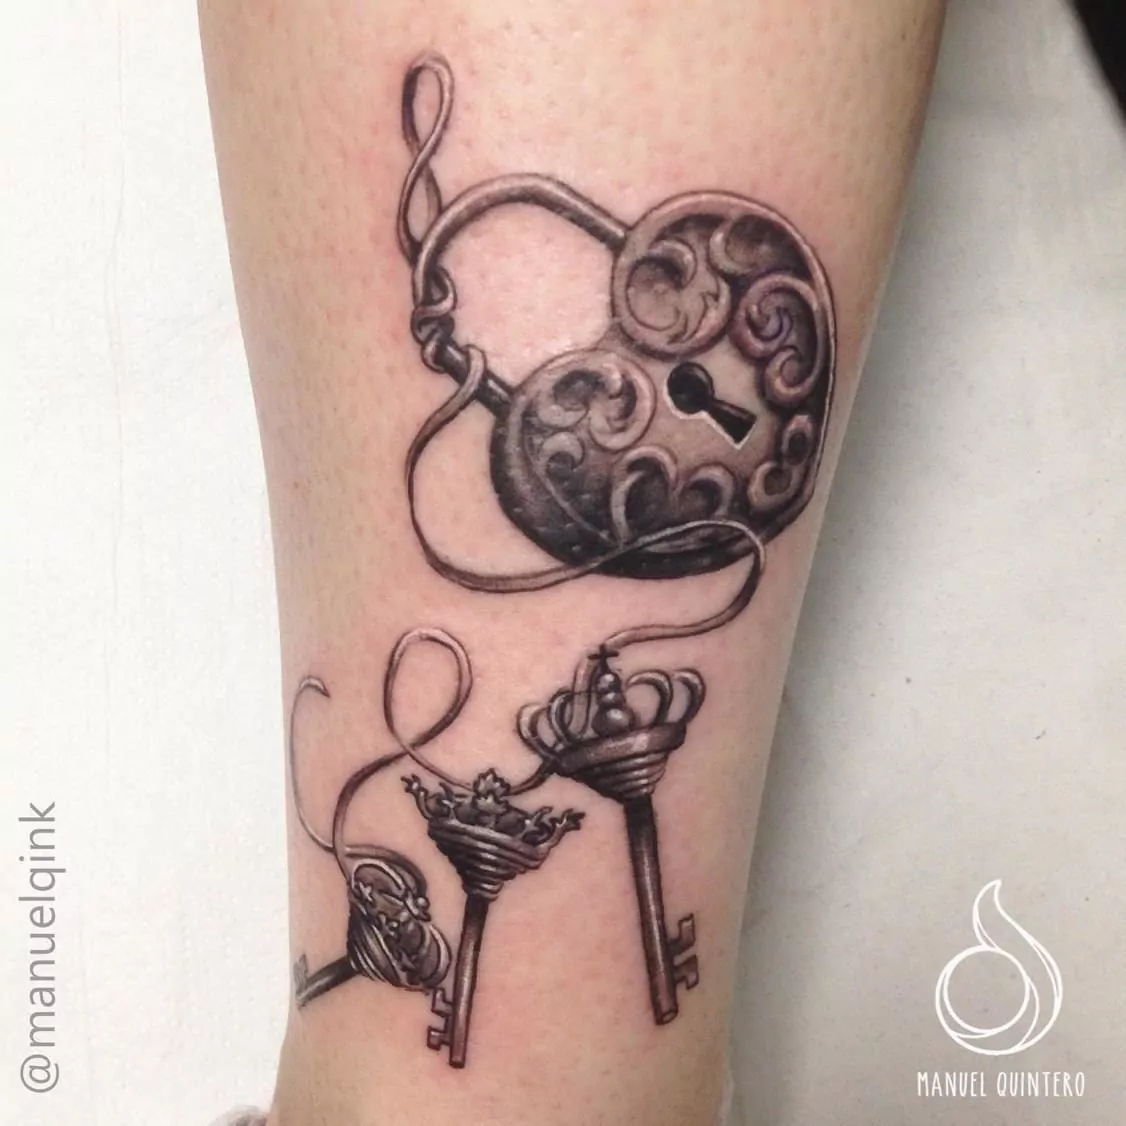 Tatuaje de un candado en forma de corazón con tres llaves con forma de corana estilo realismo